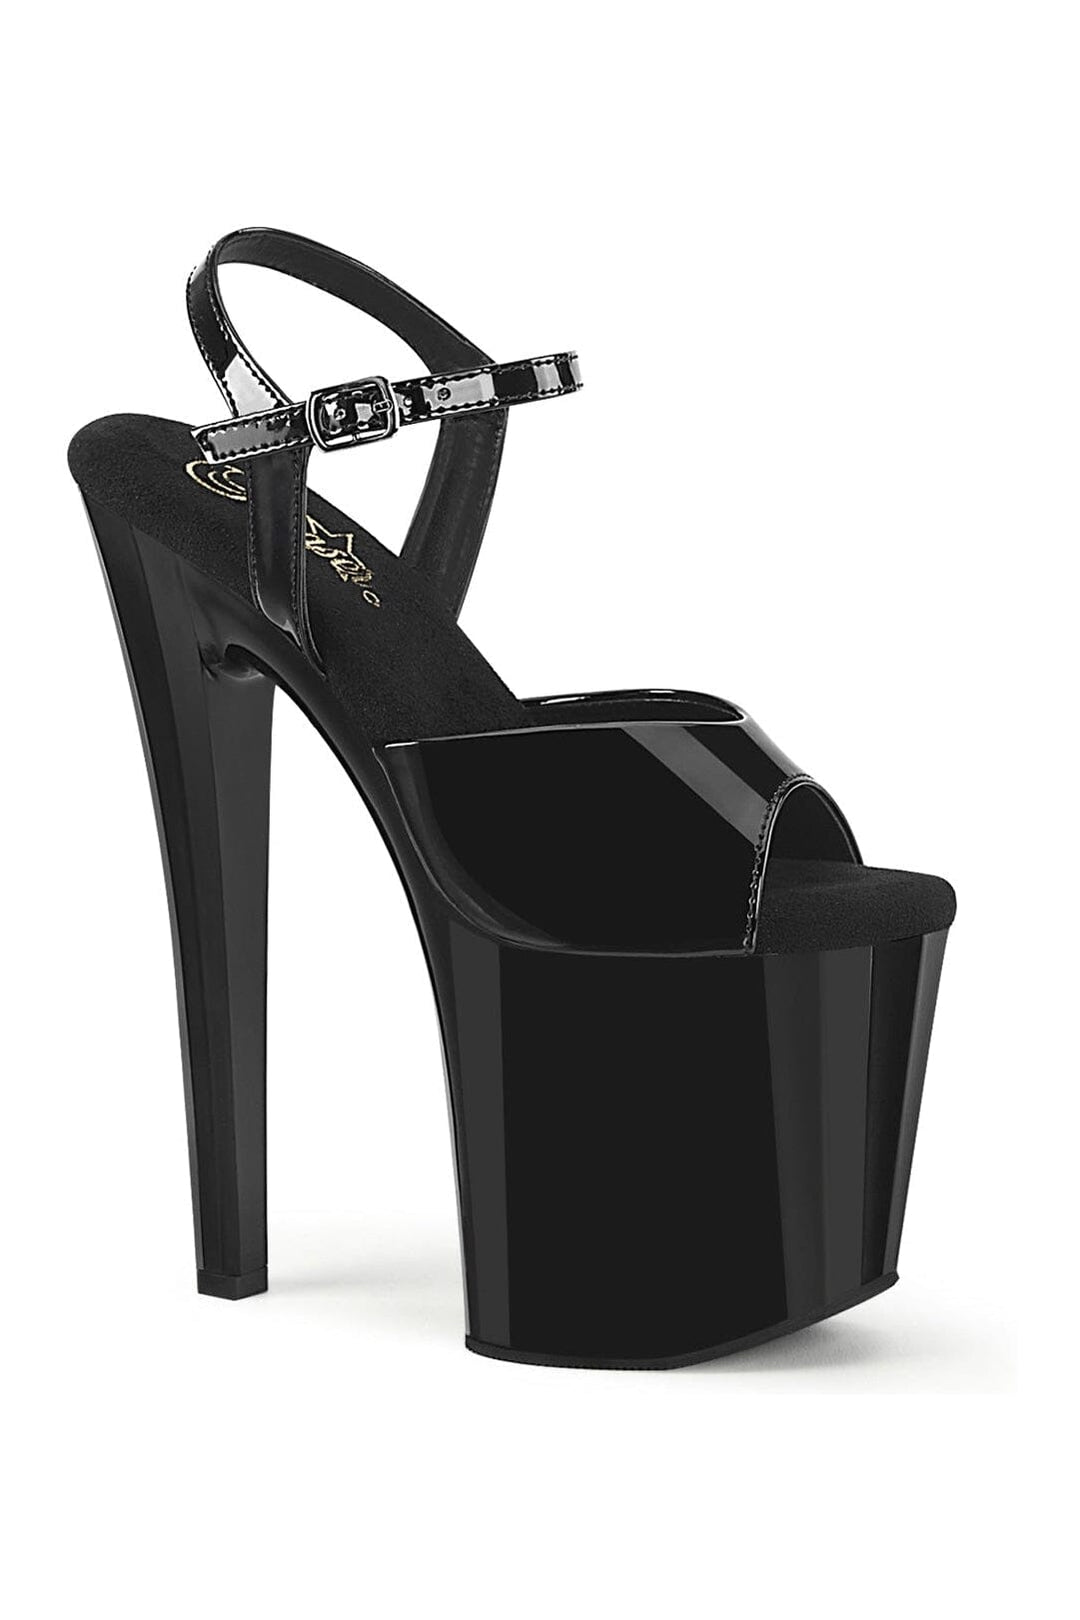 ENCHANT-709 Black Patent Sandal-Sandals-Pleaser-Black-10-Patent-SEXYSHOES.COM